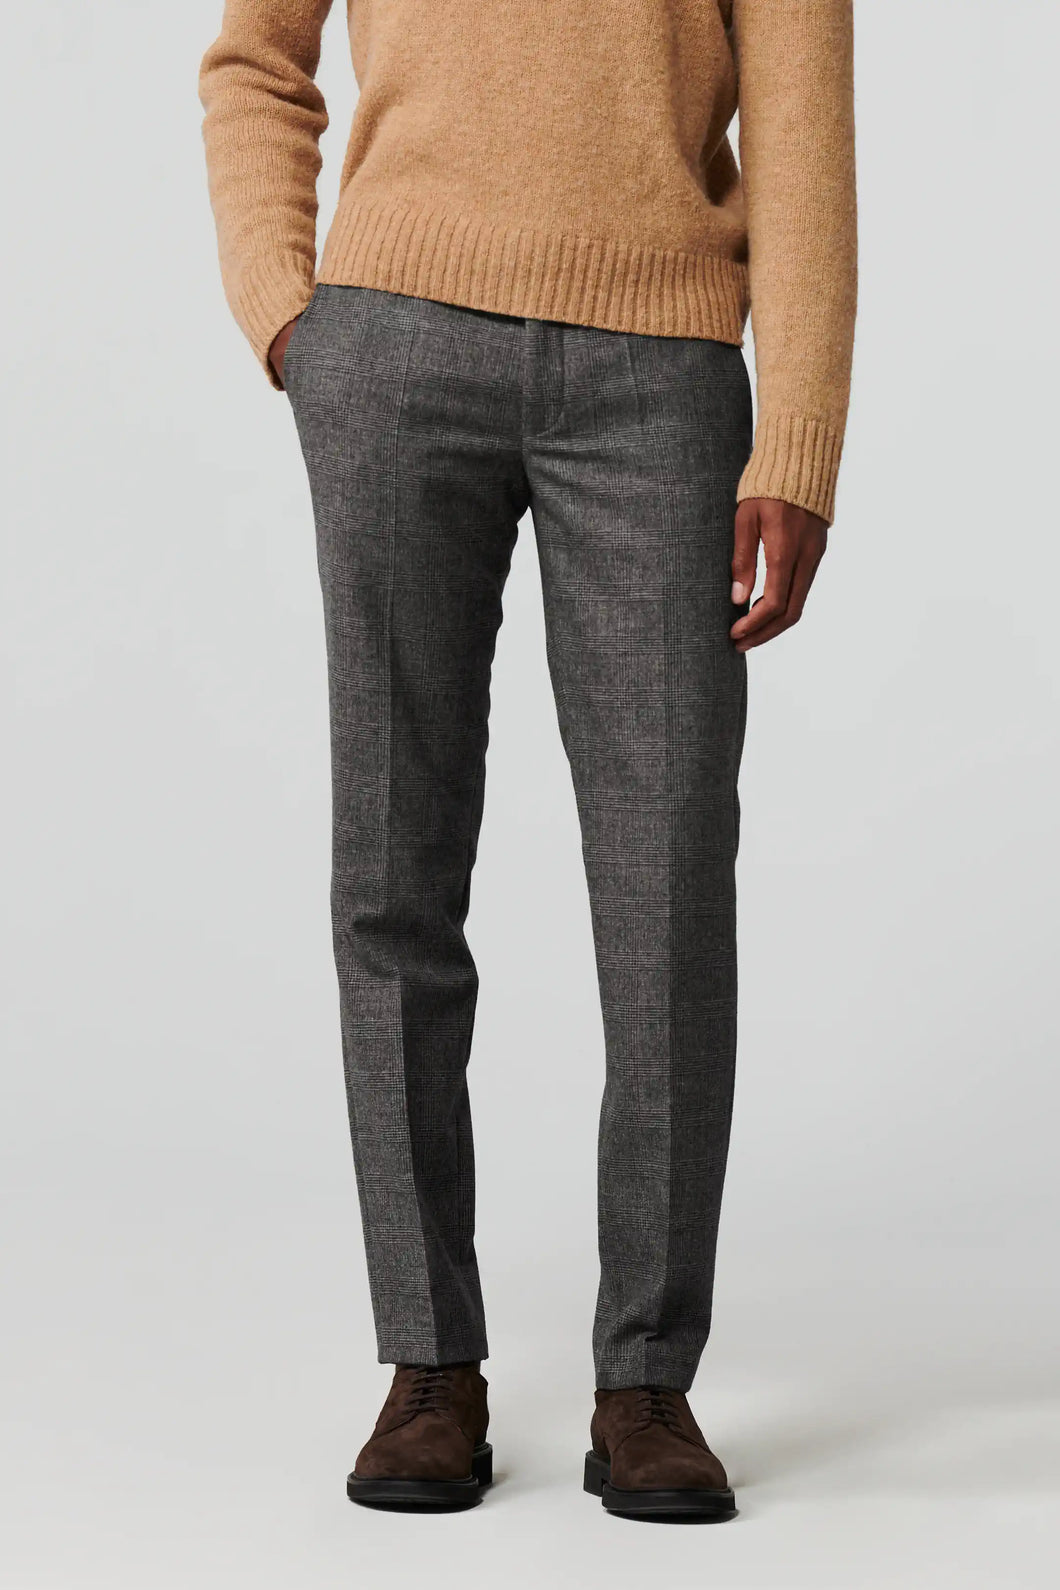 Meyer Pantalon Flannel Check